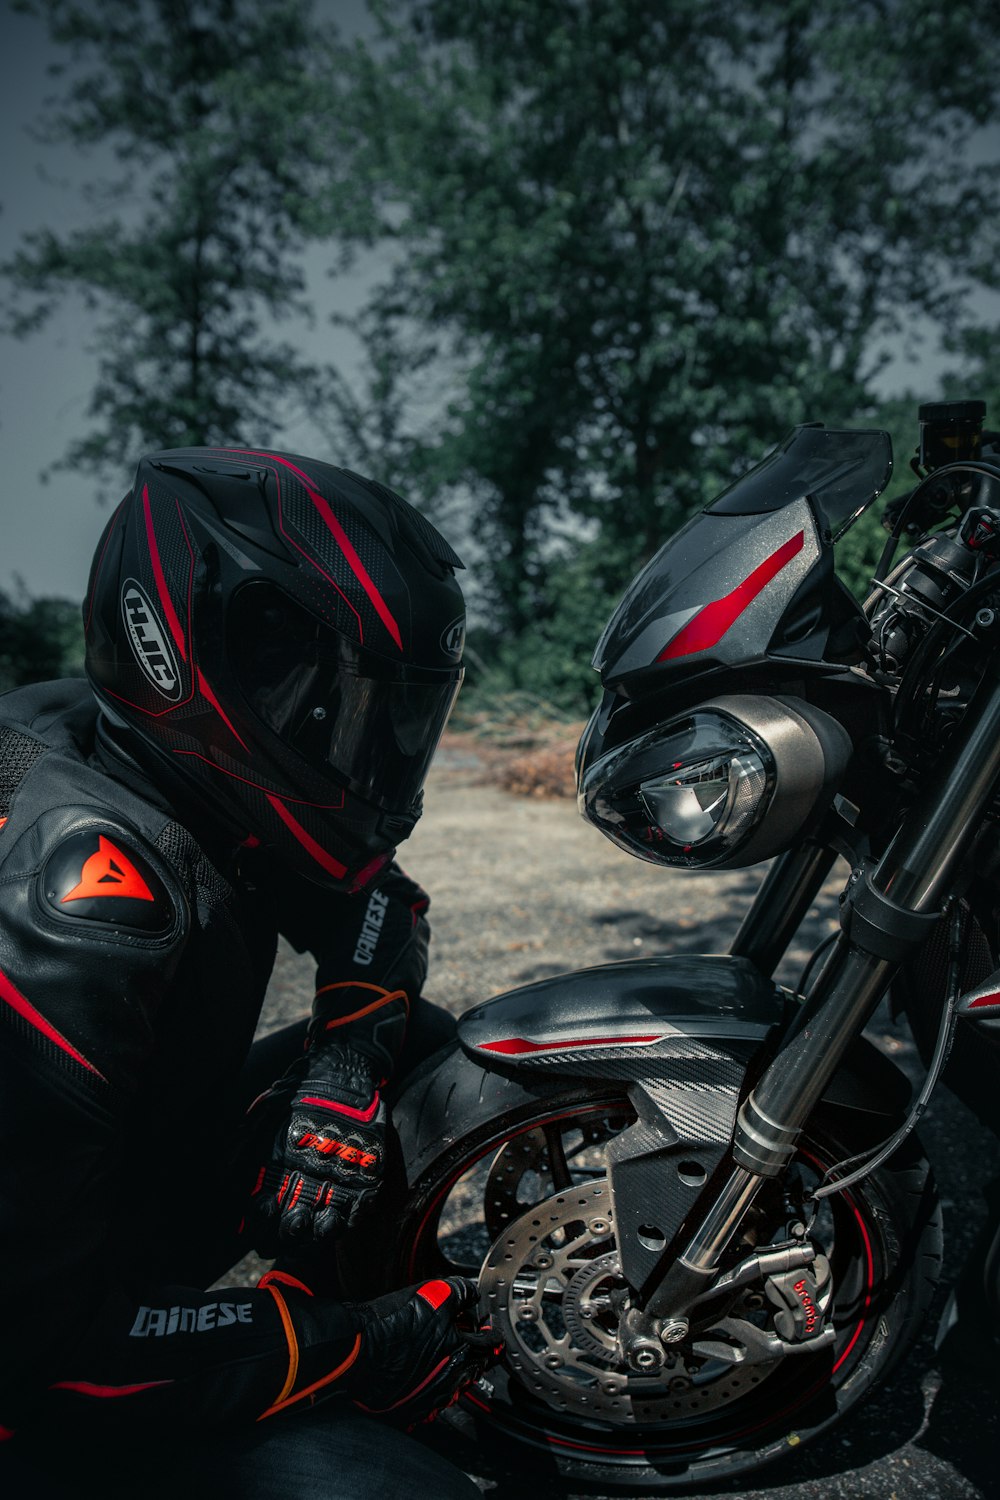 black motorcycle with helmet on motorcycle